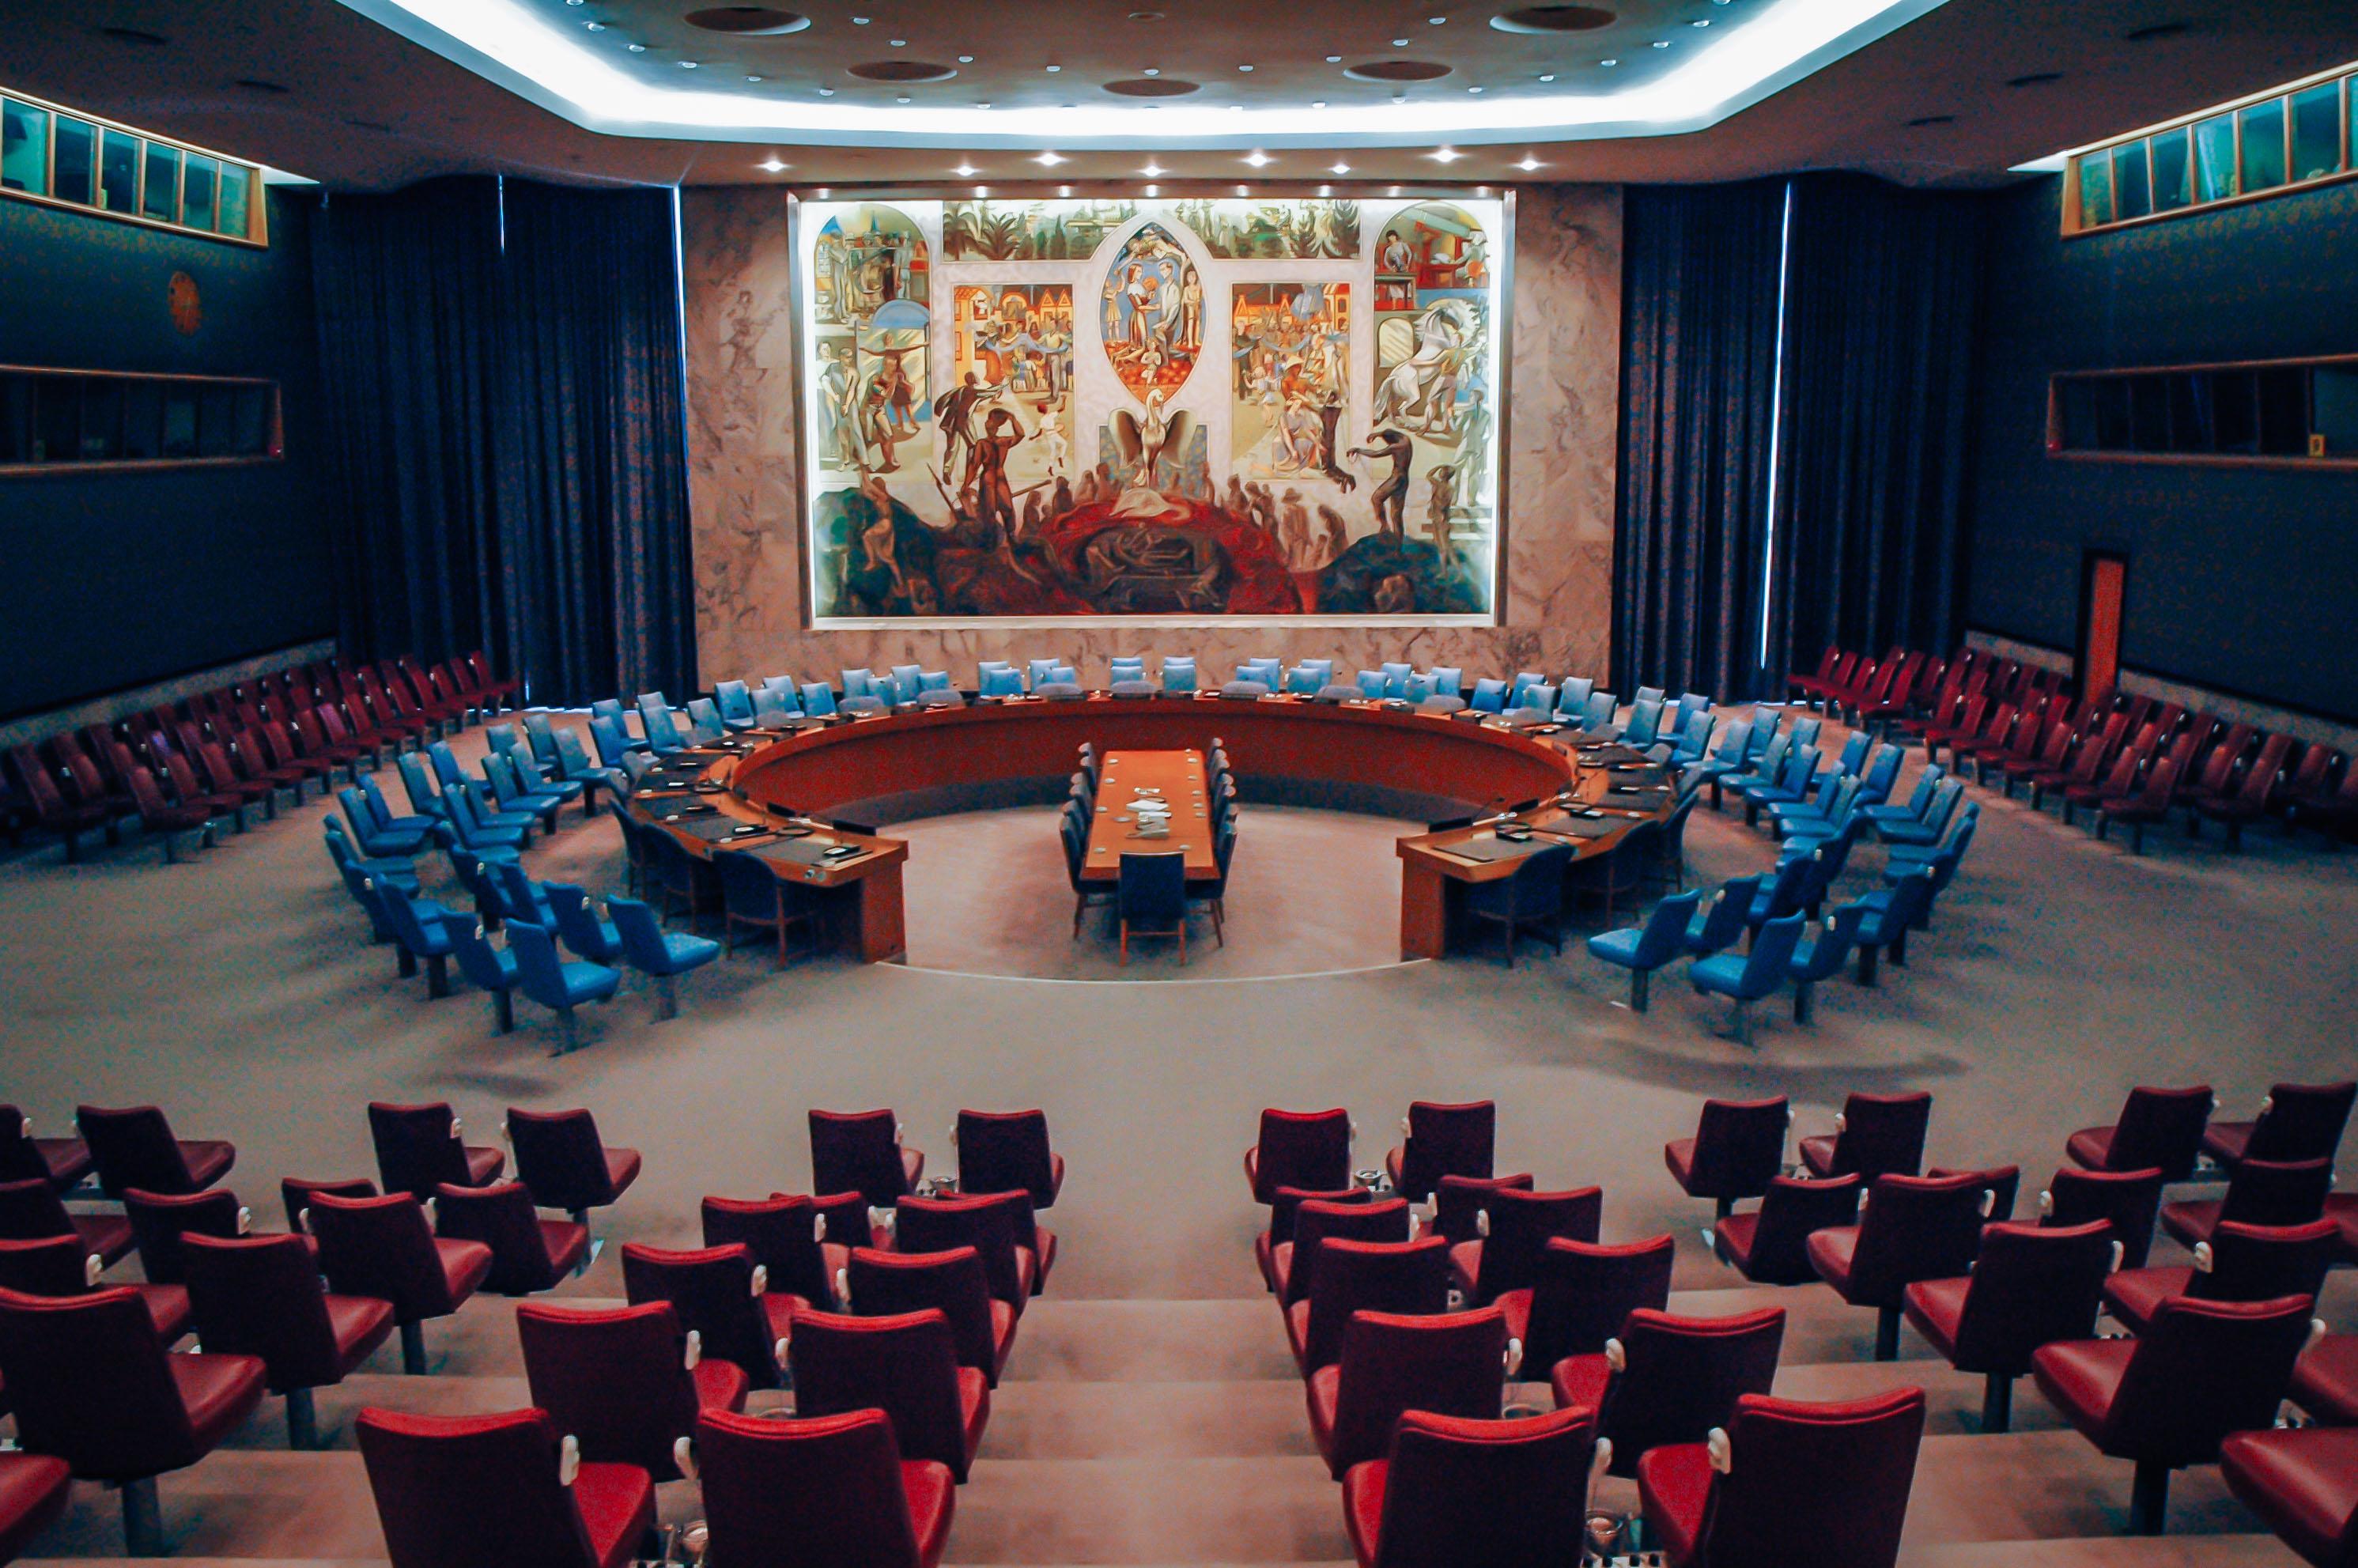 The UN Security Council